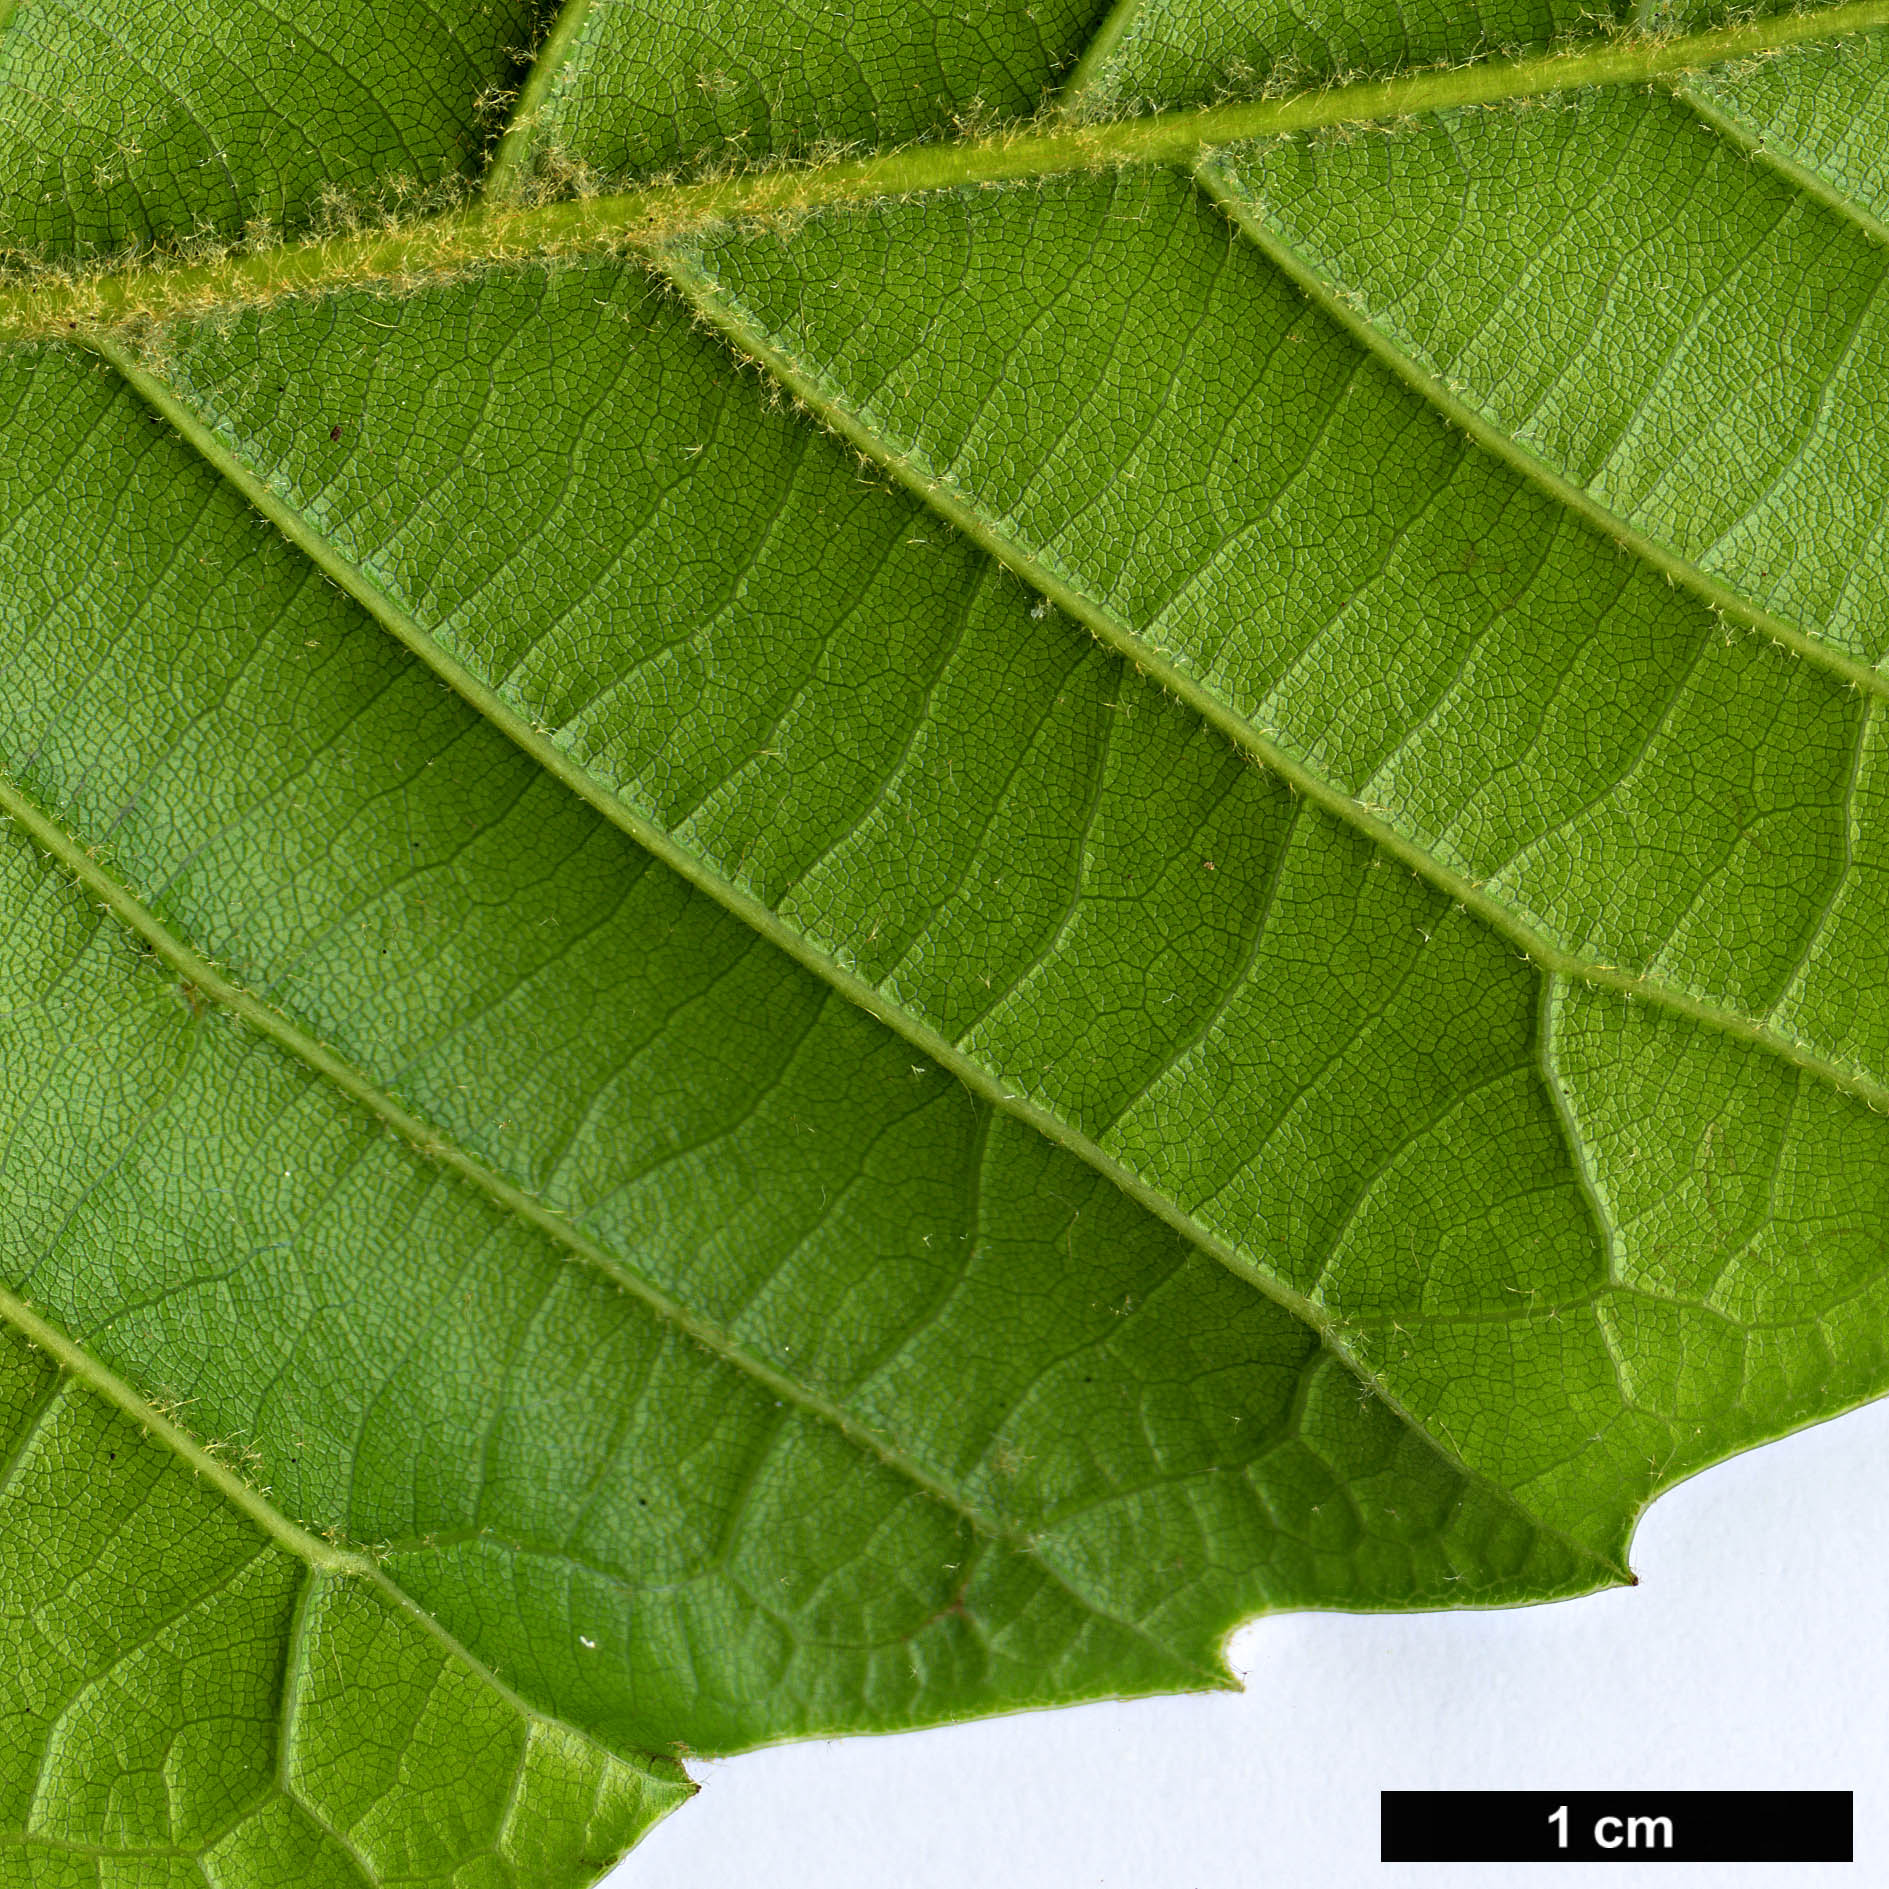 High resolution image: Family: Fagaceae - Genus: Quercus - Taxon: marlipoensis